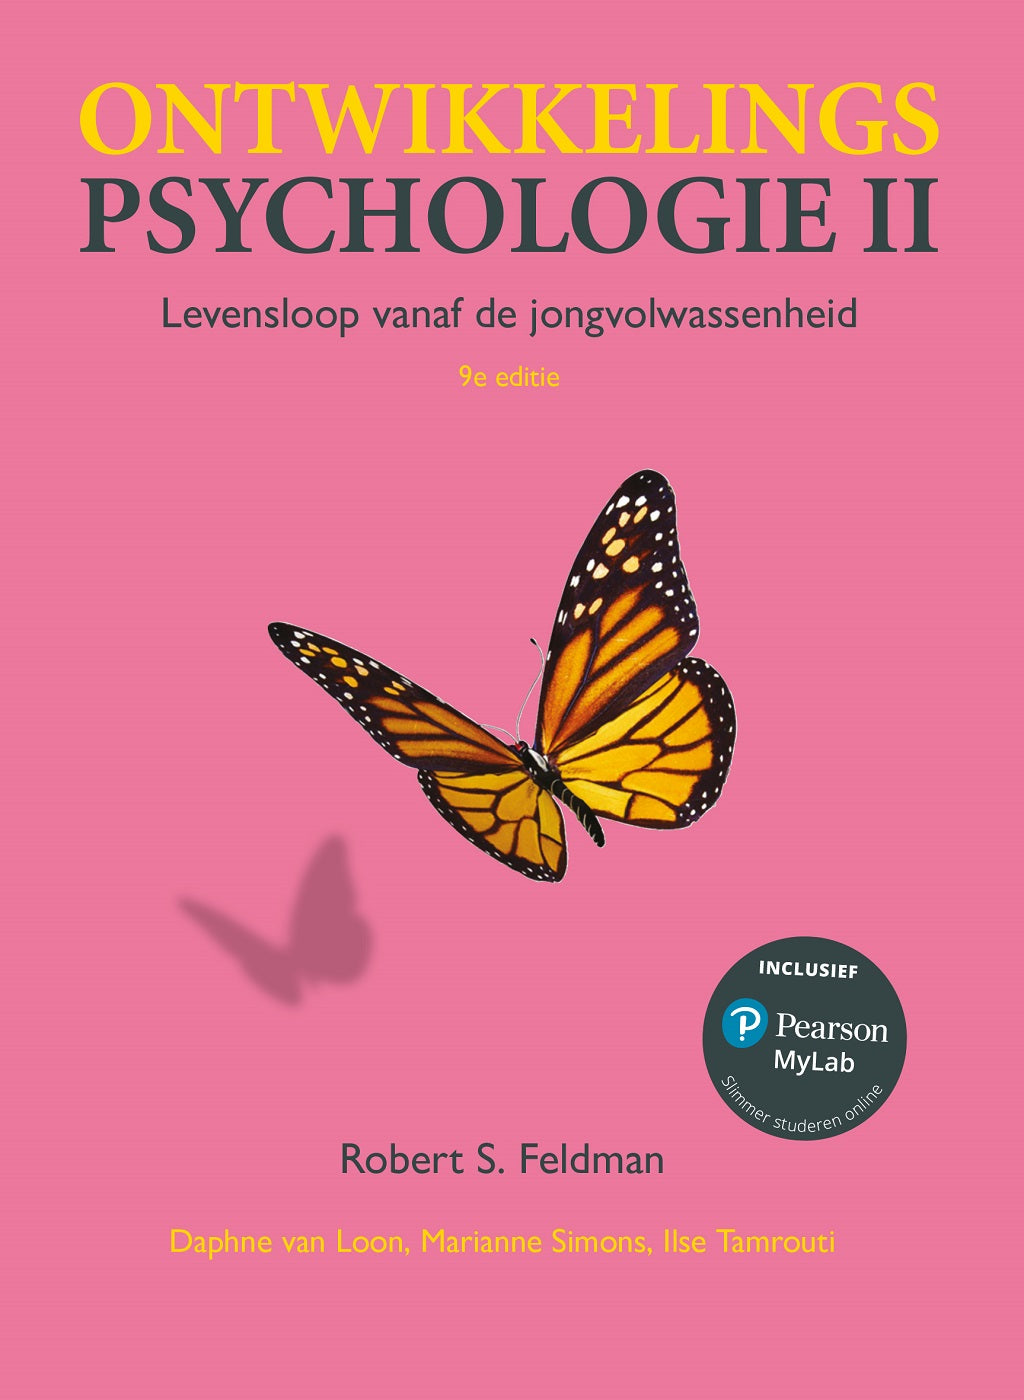 Ontwikkelingspsychologie II, 9e editie (Digitaal)